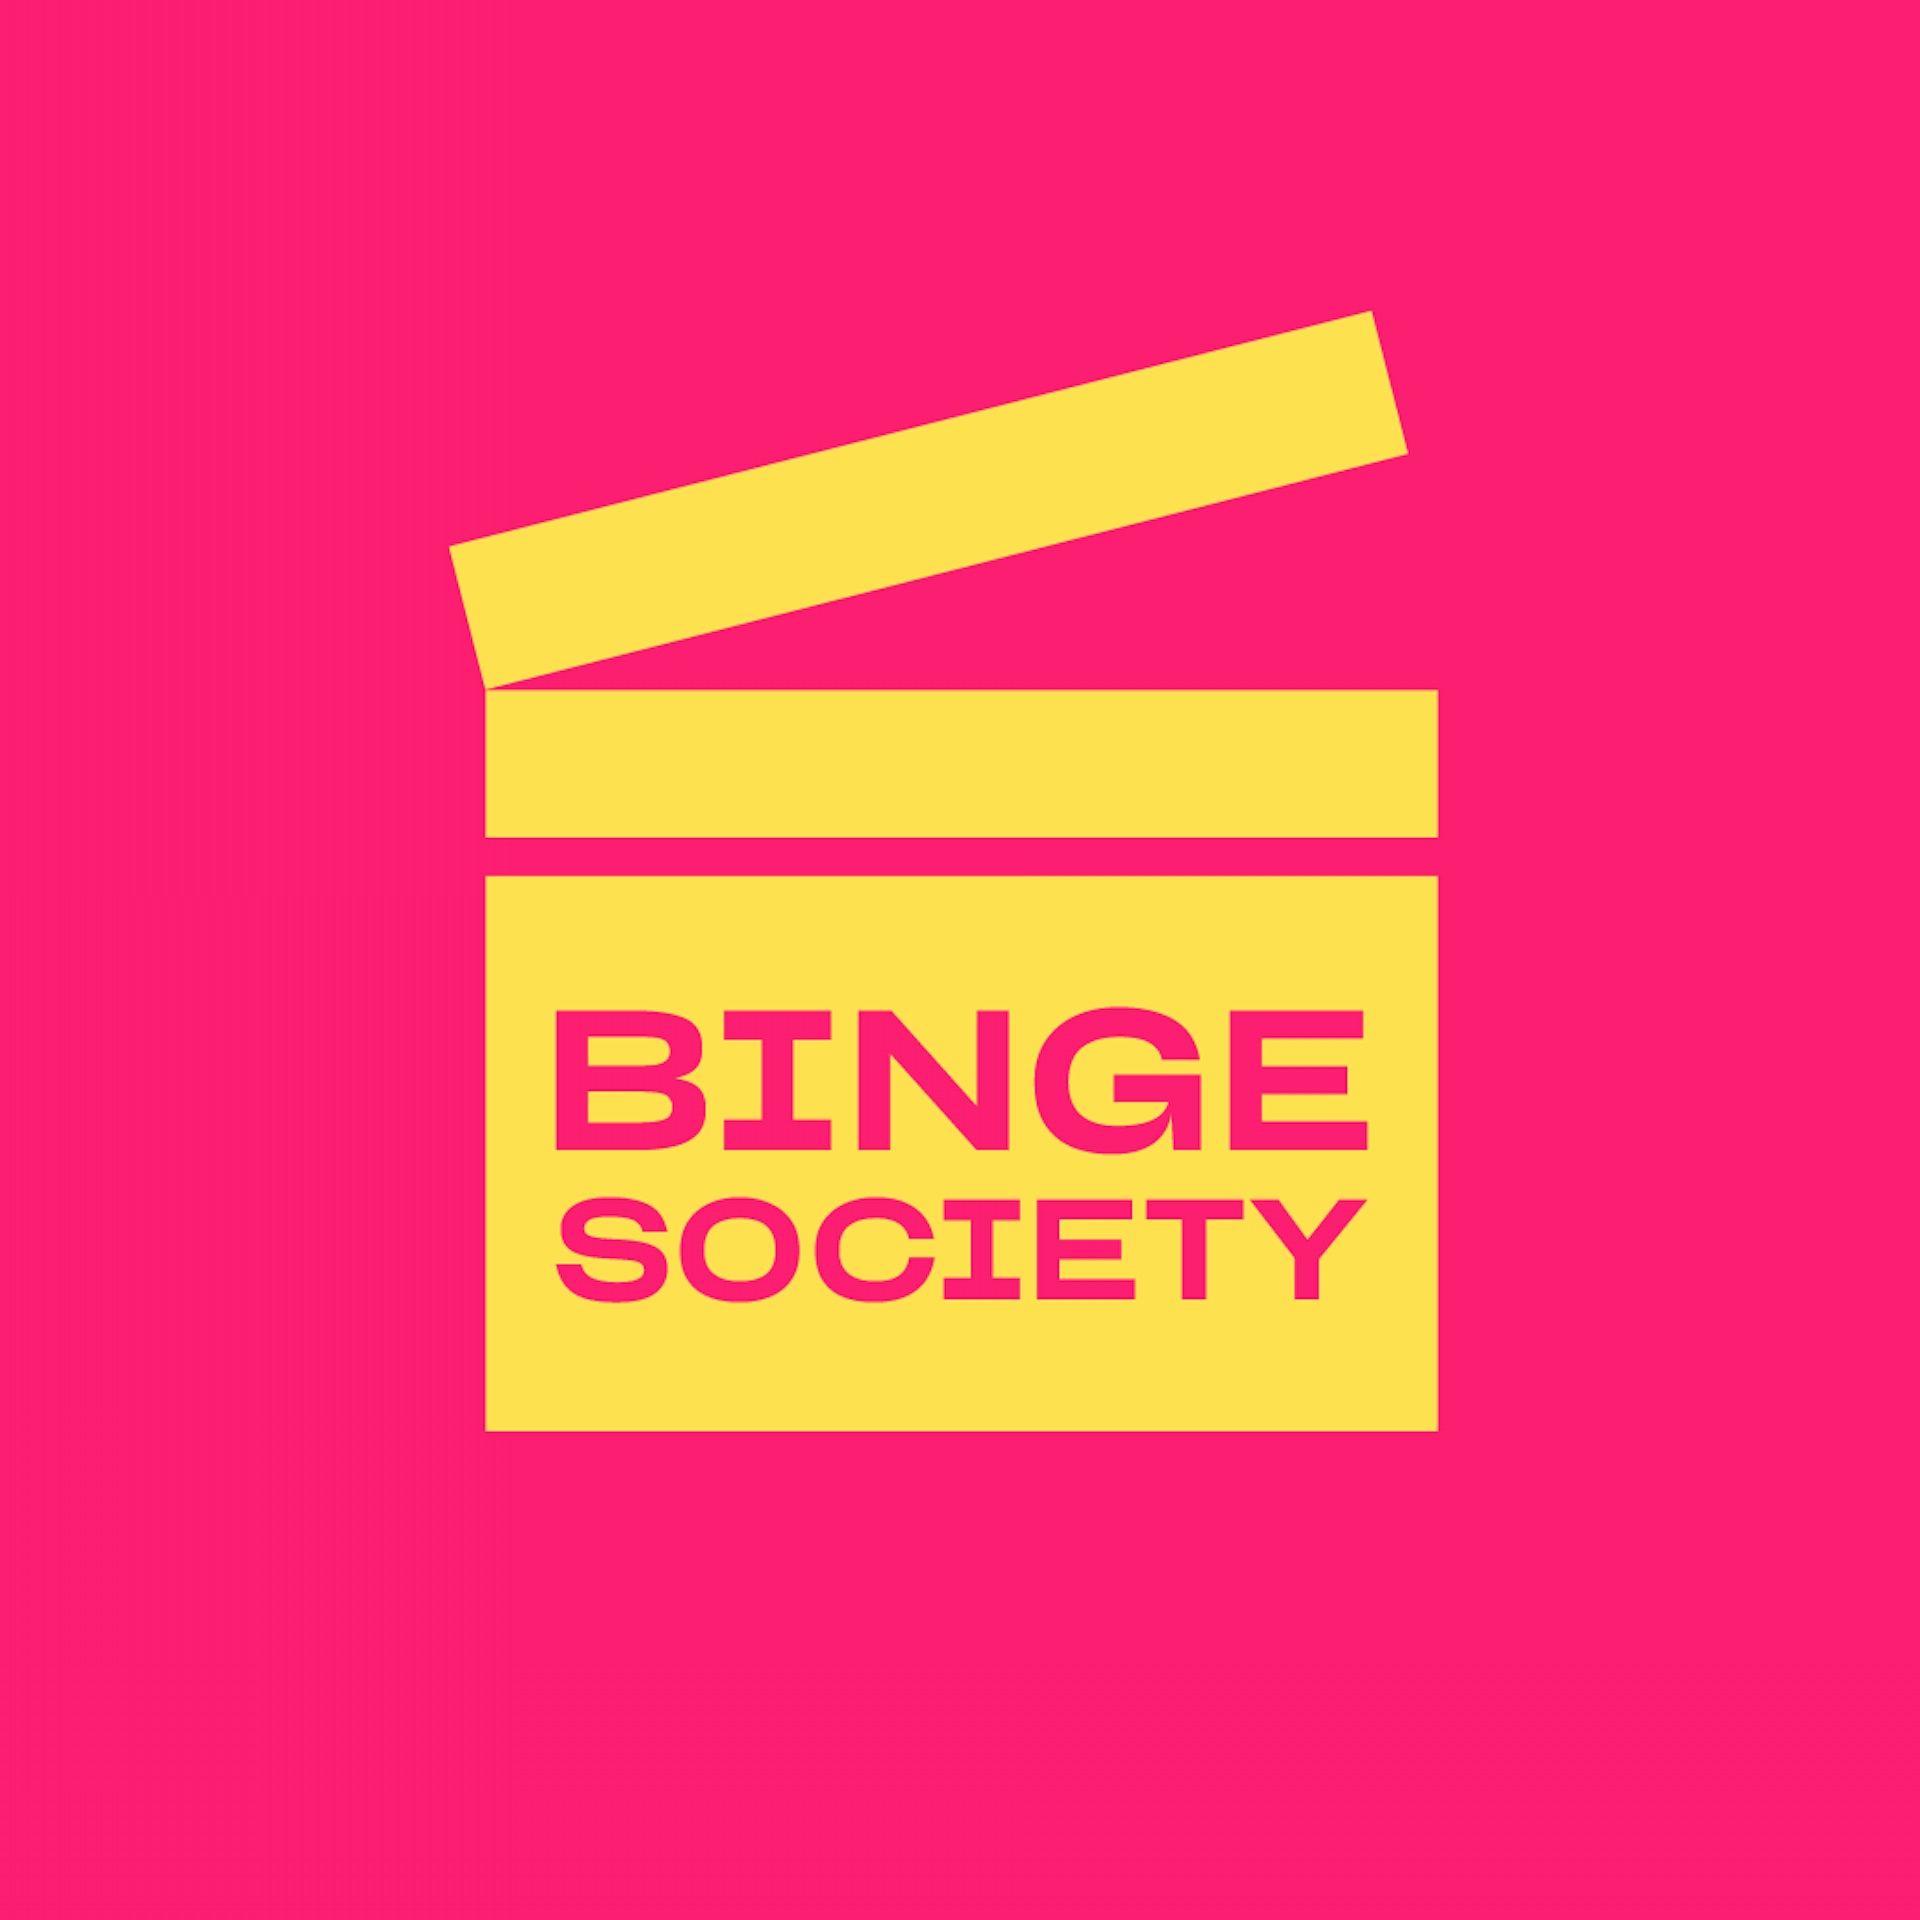 Vega Digital Awards Winner - Jellysmack's Binge Society Popcorn Perfect Movie Clips, The Brand Agency